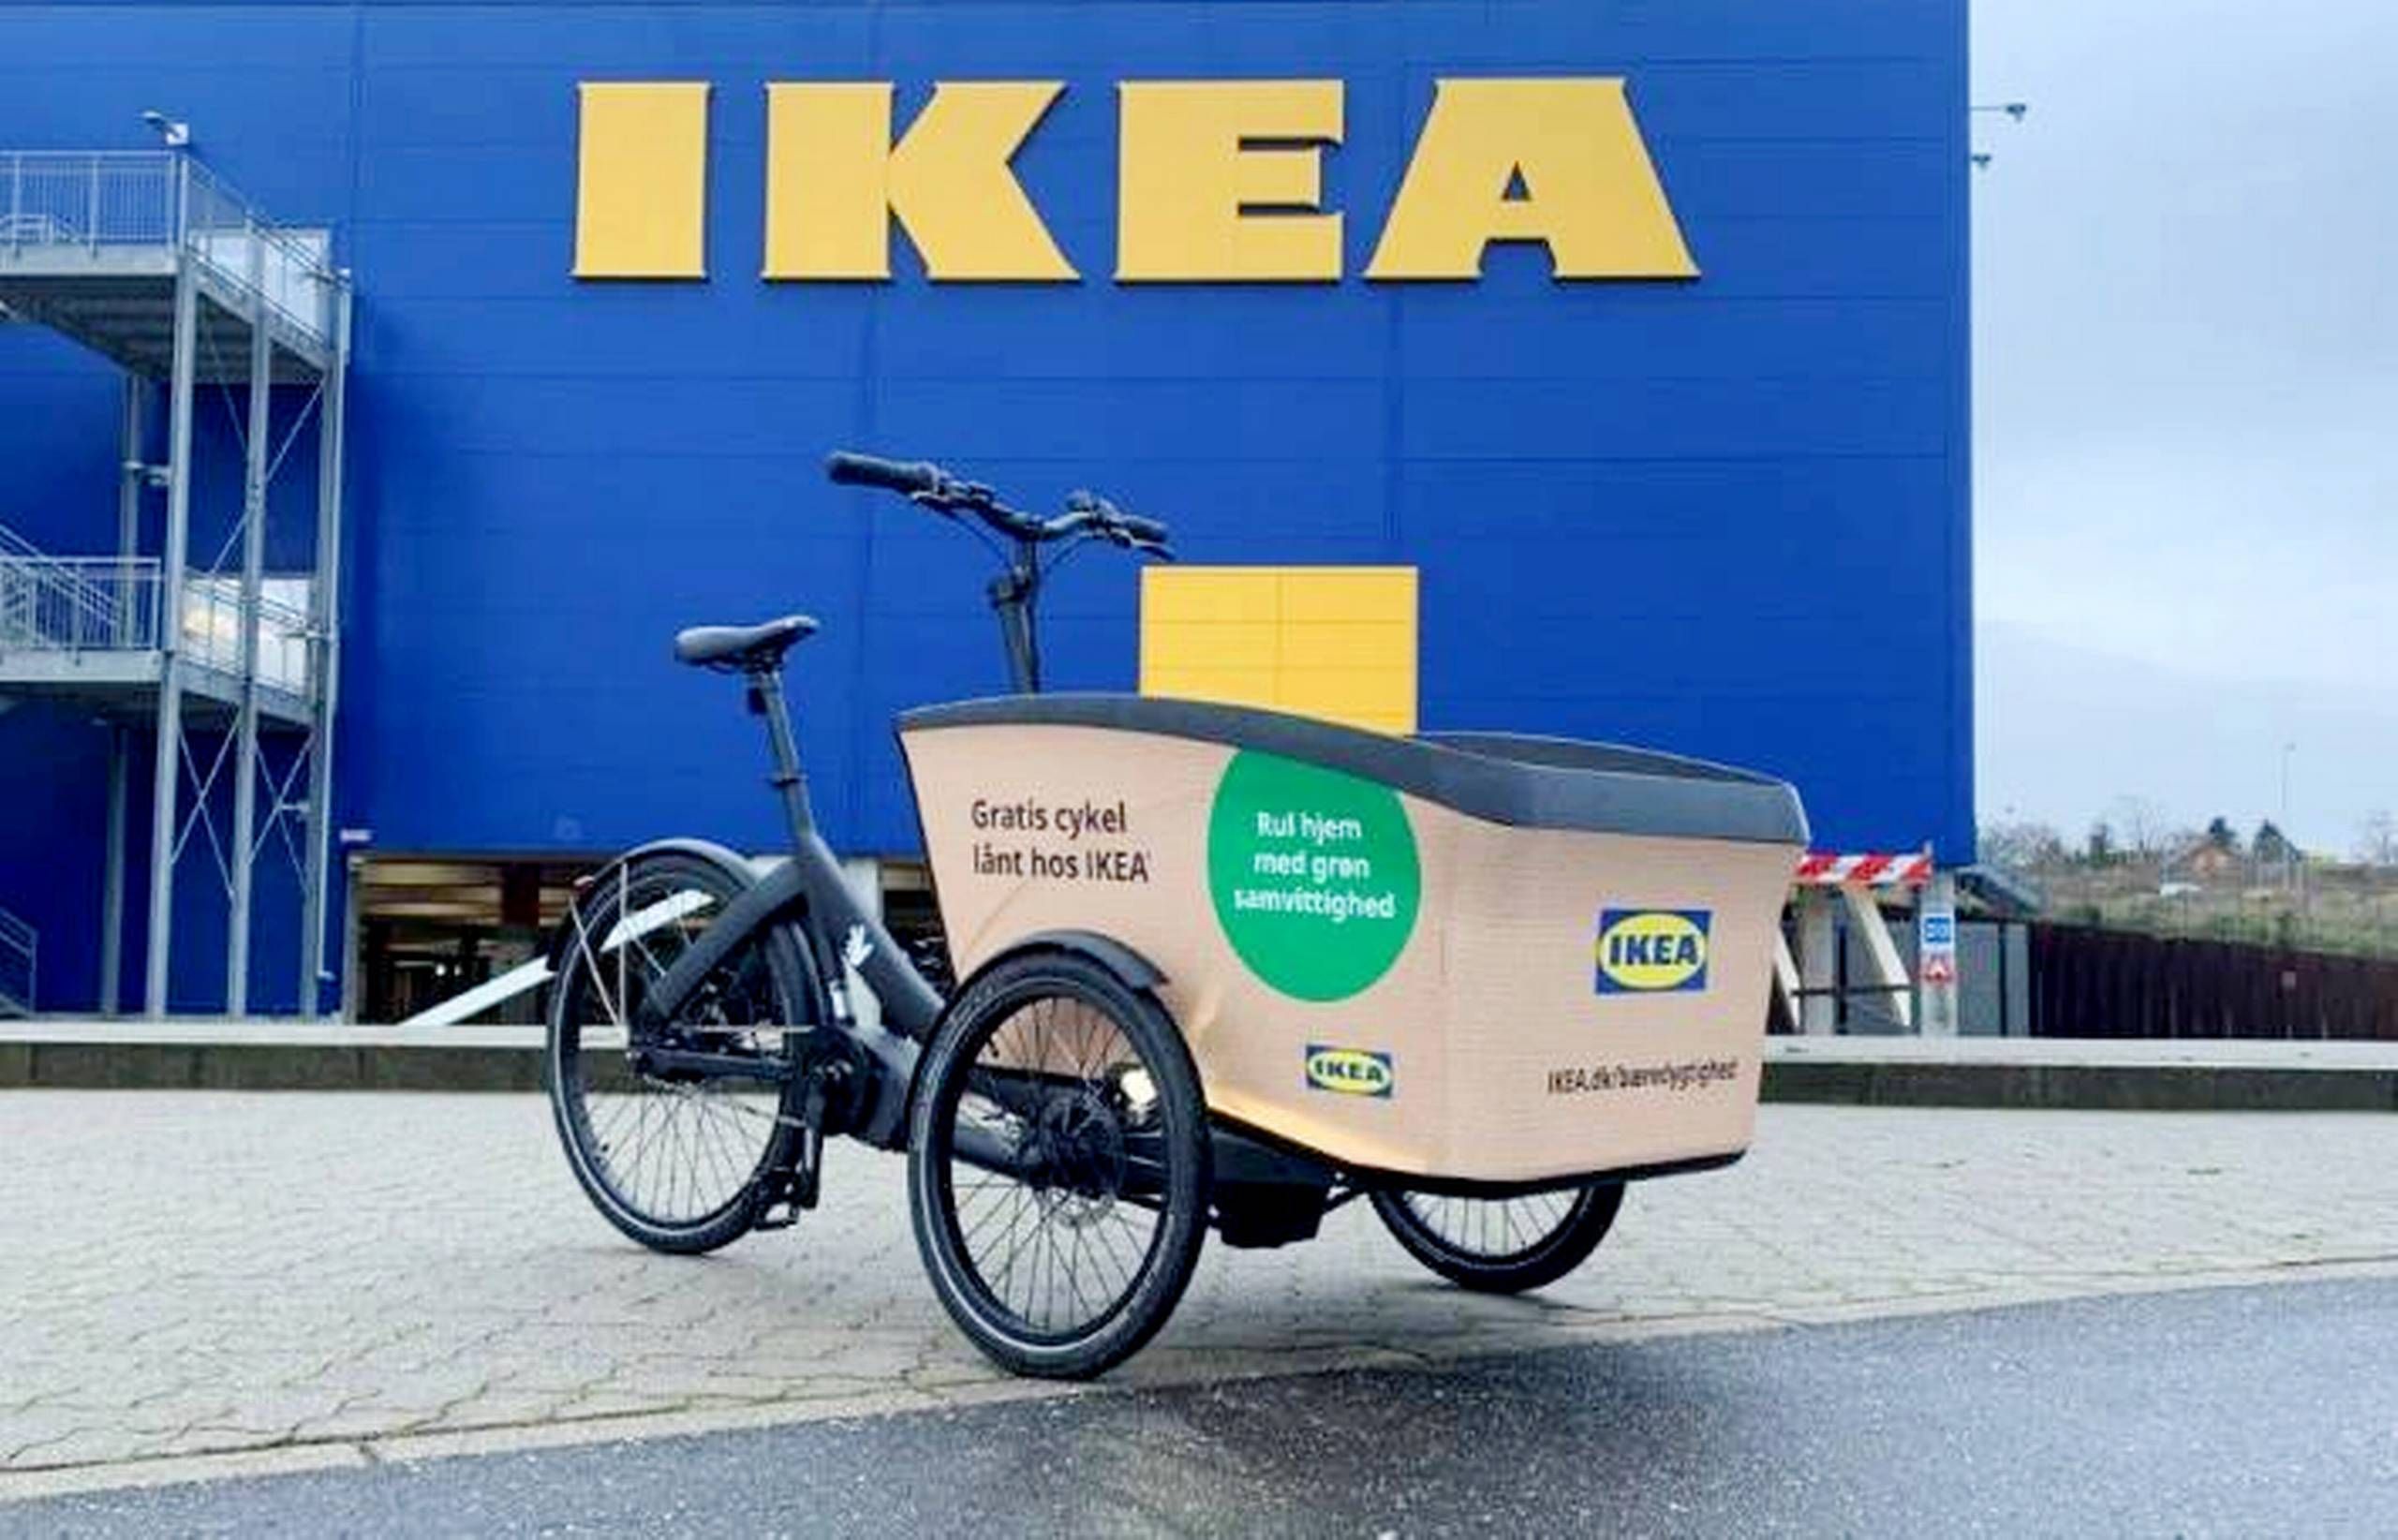 Mince Apparatet Kassér IKEA i Aarhus starter gratis udlån af el-ladcykler